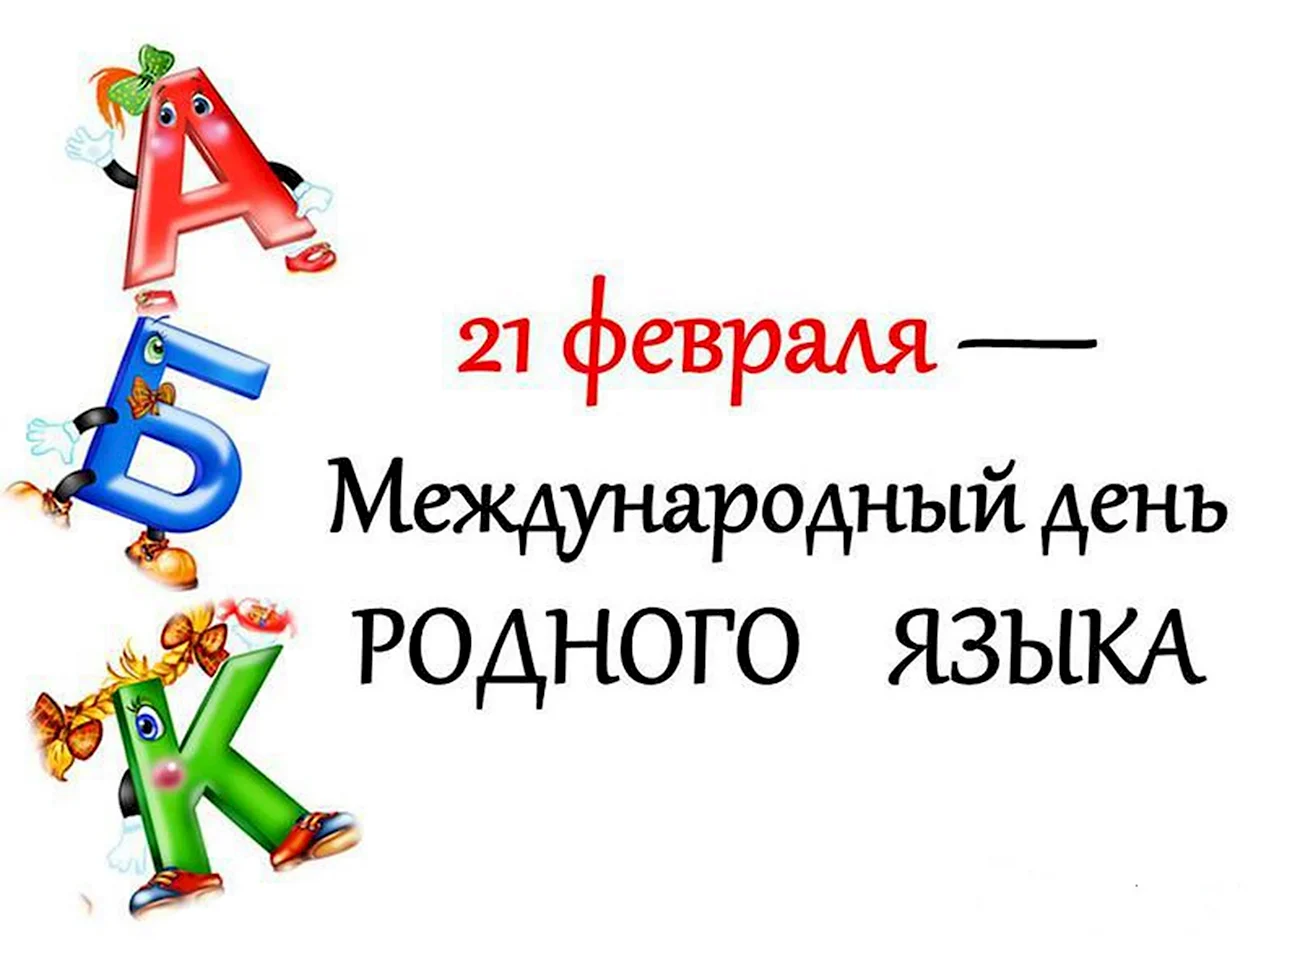 21 Февраля Международный день родного языка. Поздравление